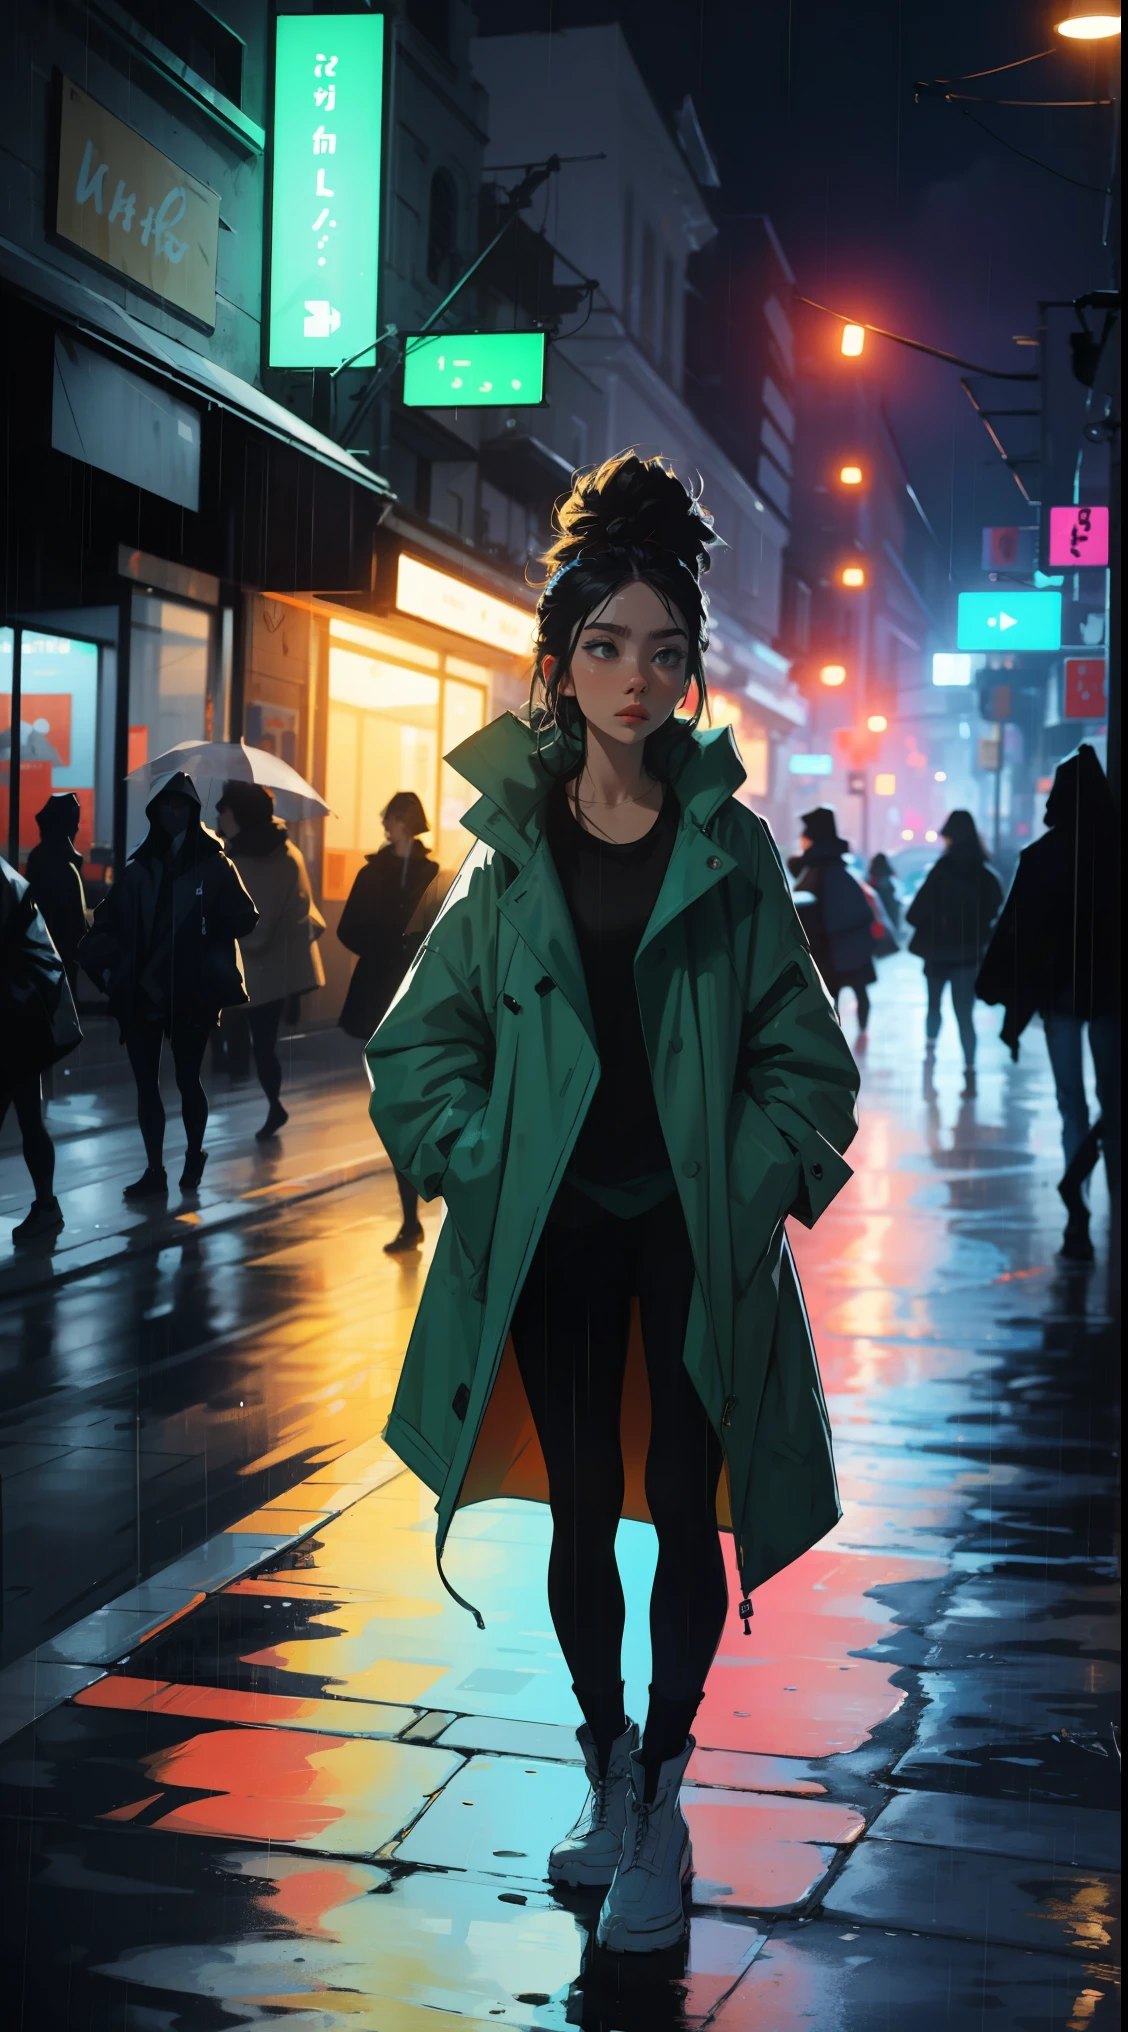 1人の女の子,夜の街,雨,コート,ポケットに手を入れる, ネオン, 光漏れ, 鮮やかな色彩, 大胆な色合い.